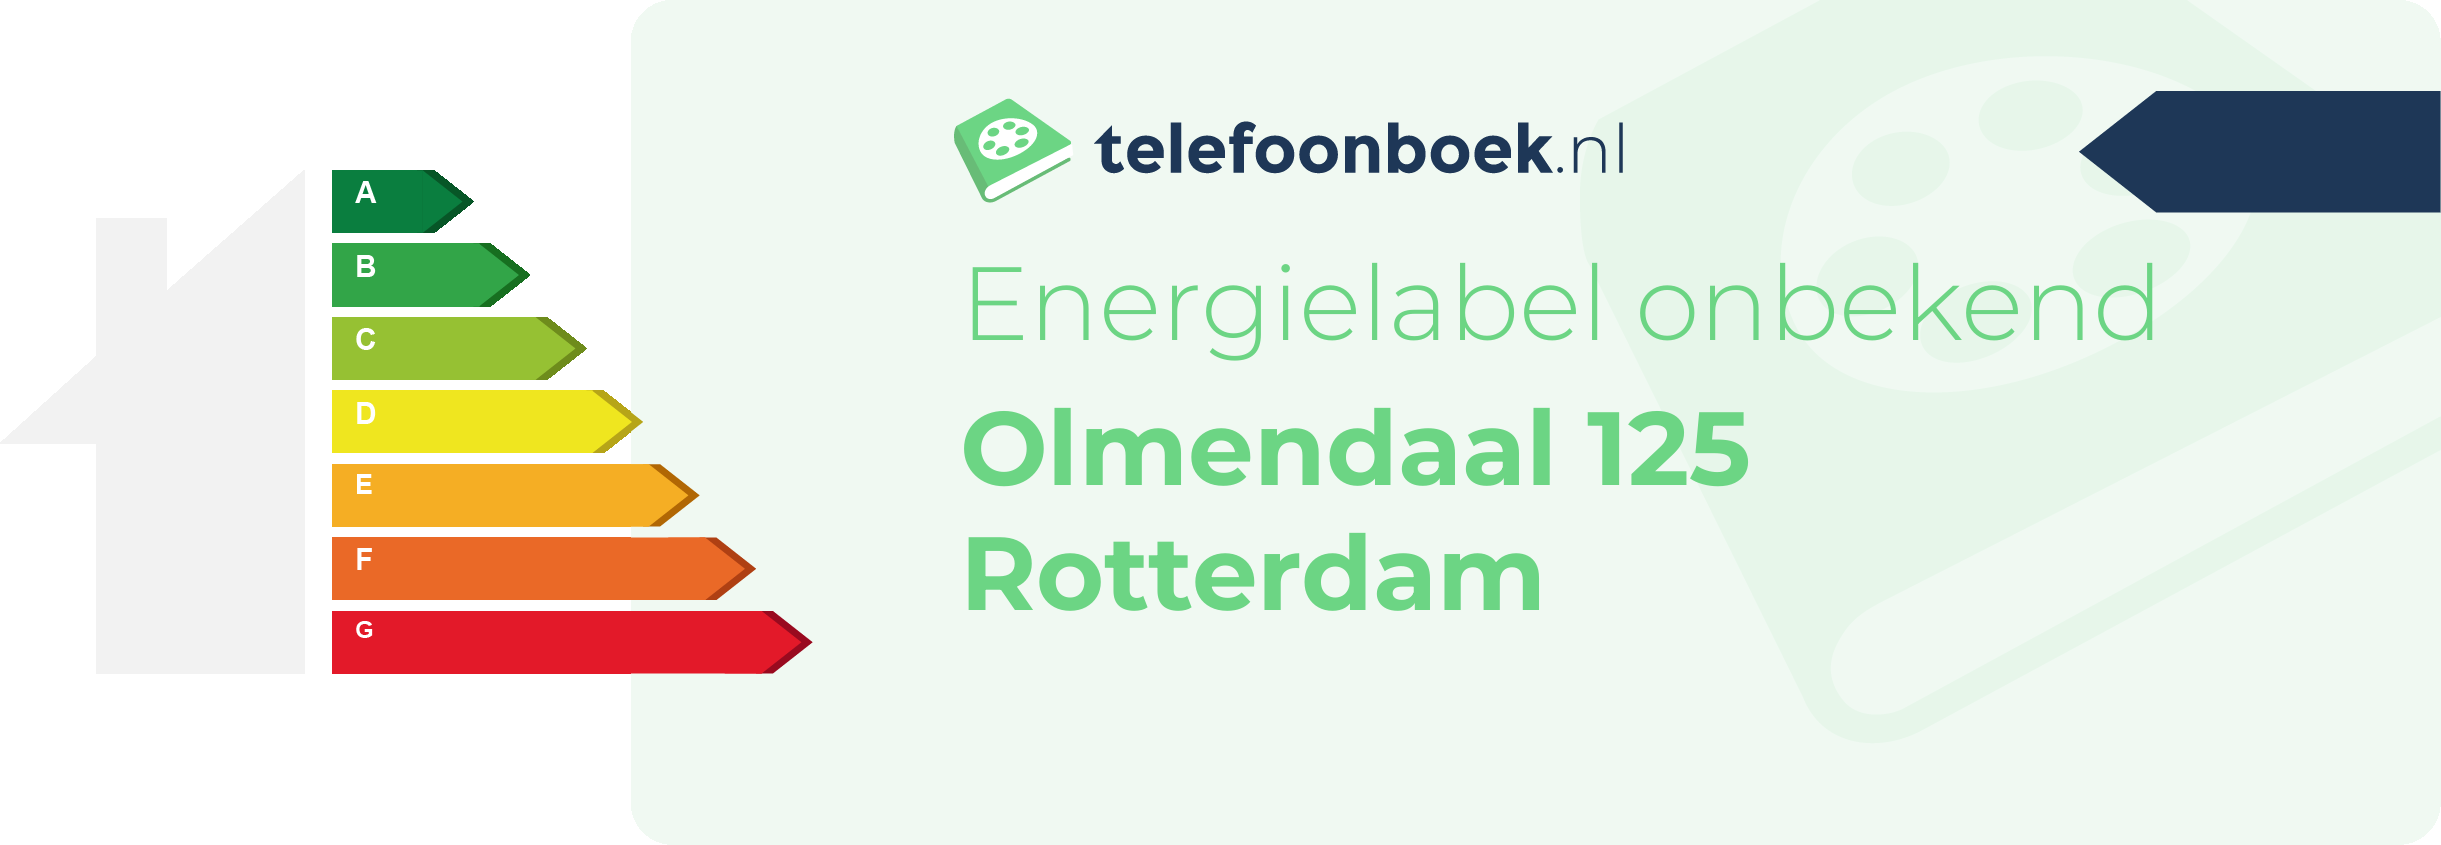 Energielabel Olmendaal 125 Rotterdam